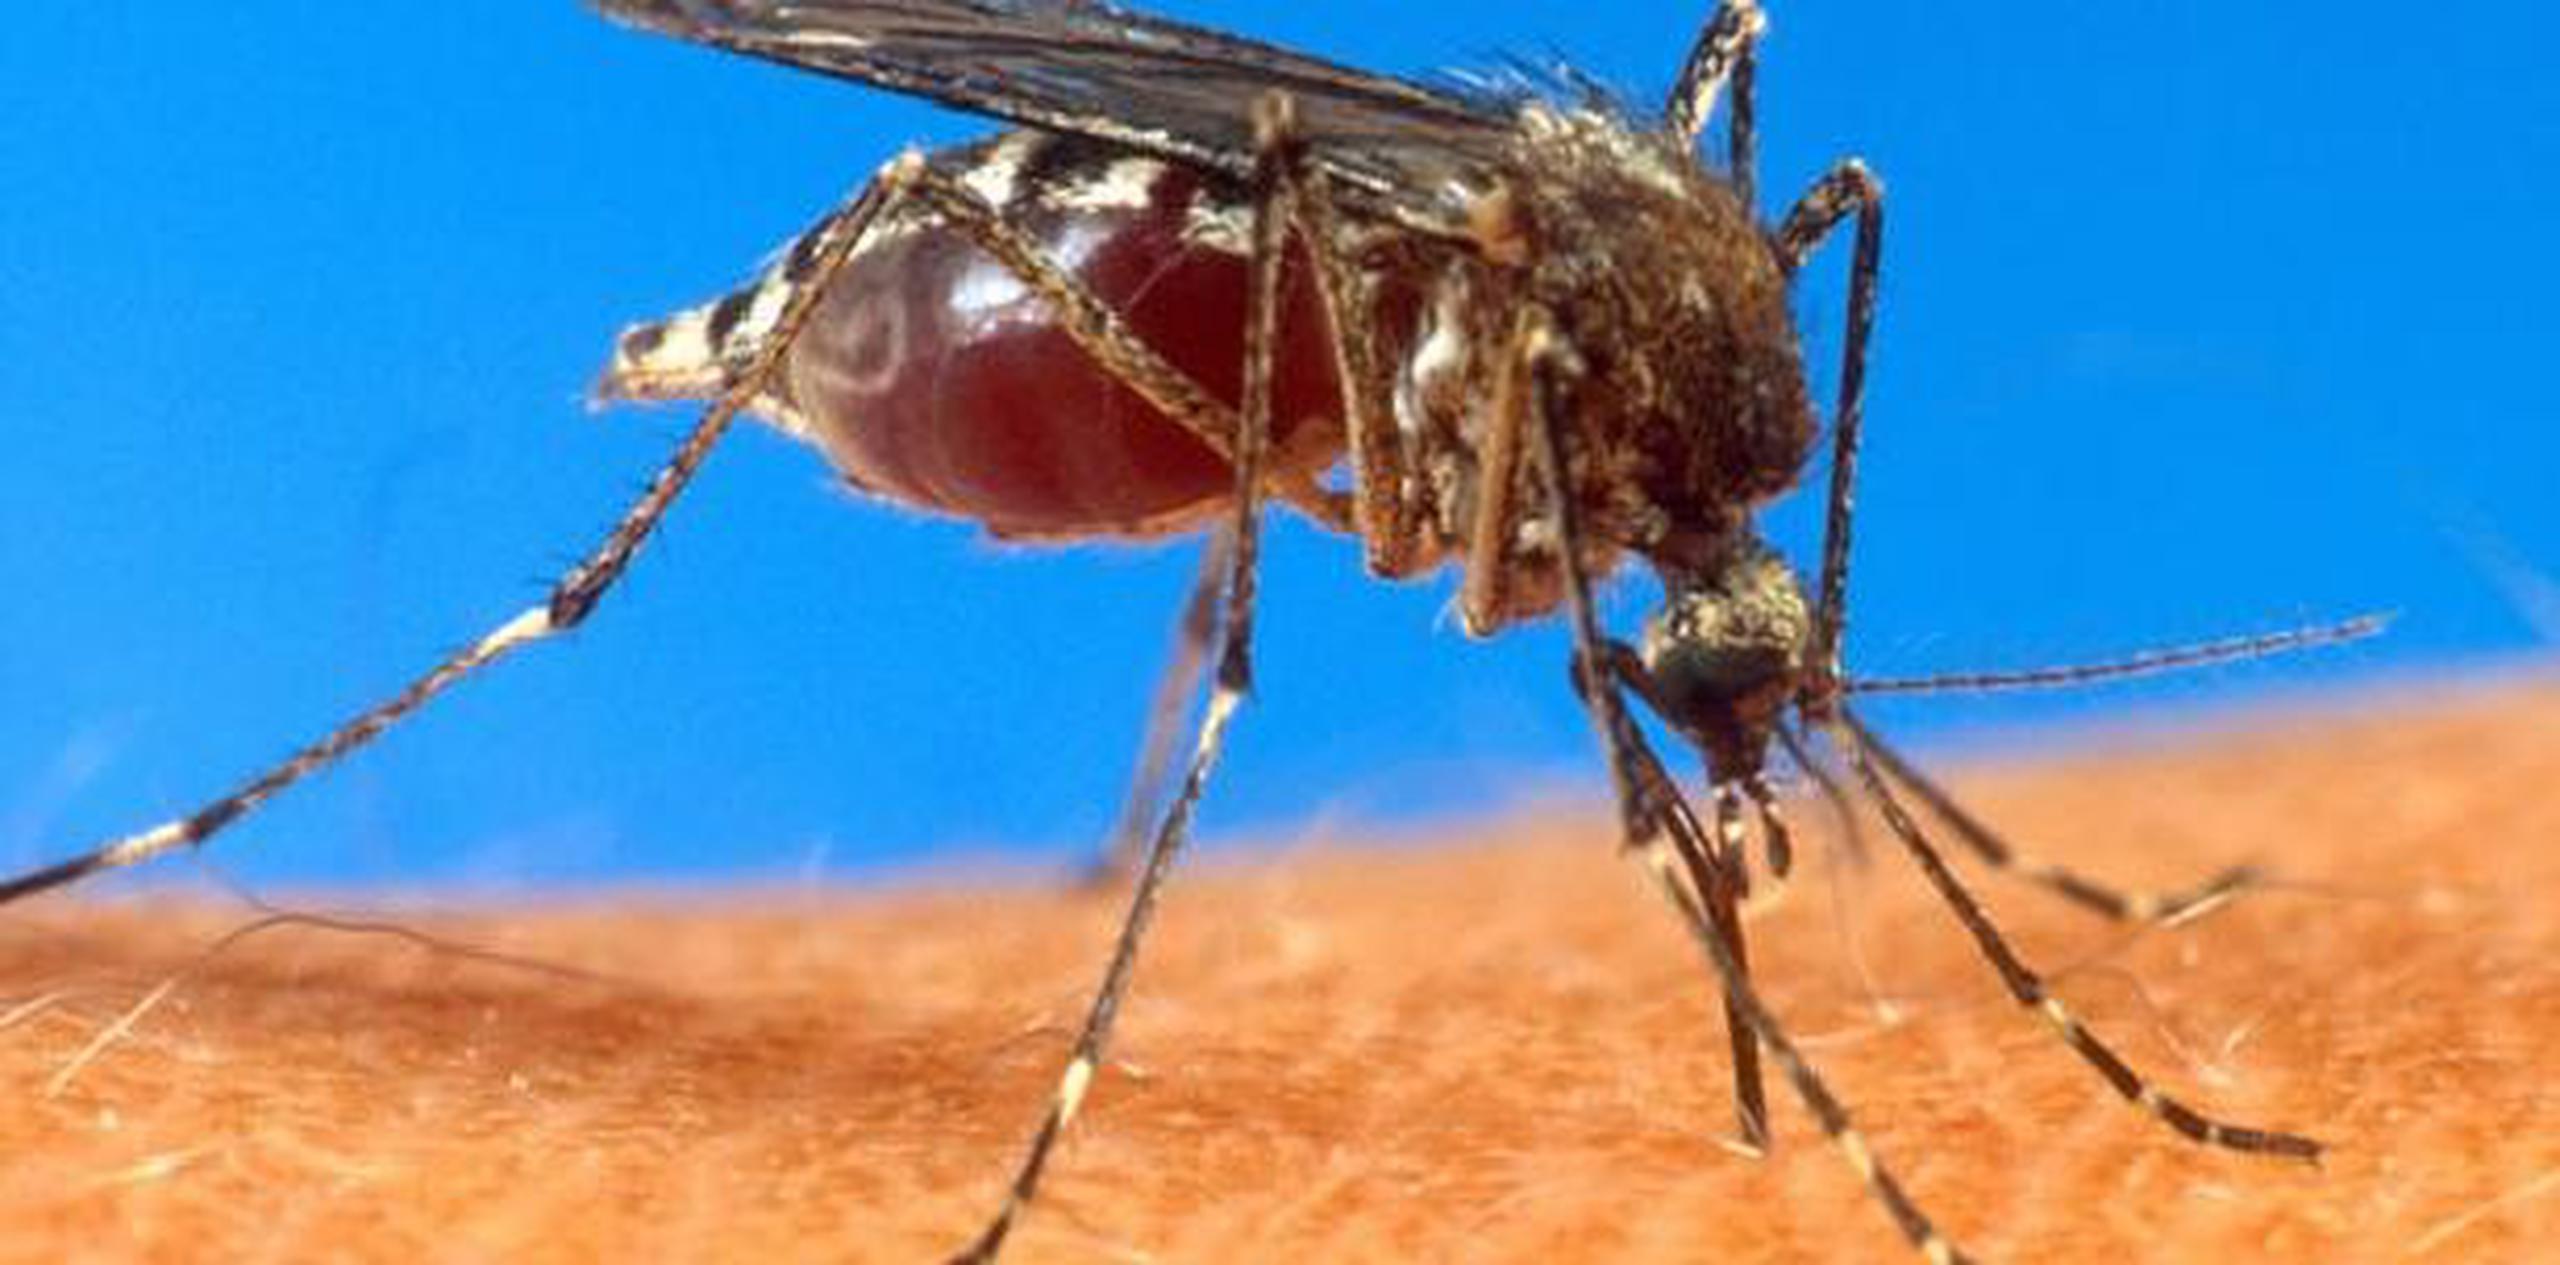 El chikungunya es una enfermedad vírica transmitida al ser humano por mosquitos notificada por vez primera en el sur de Tanzania en 1952. (Archivo)